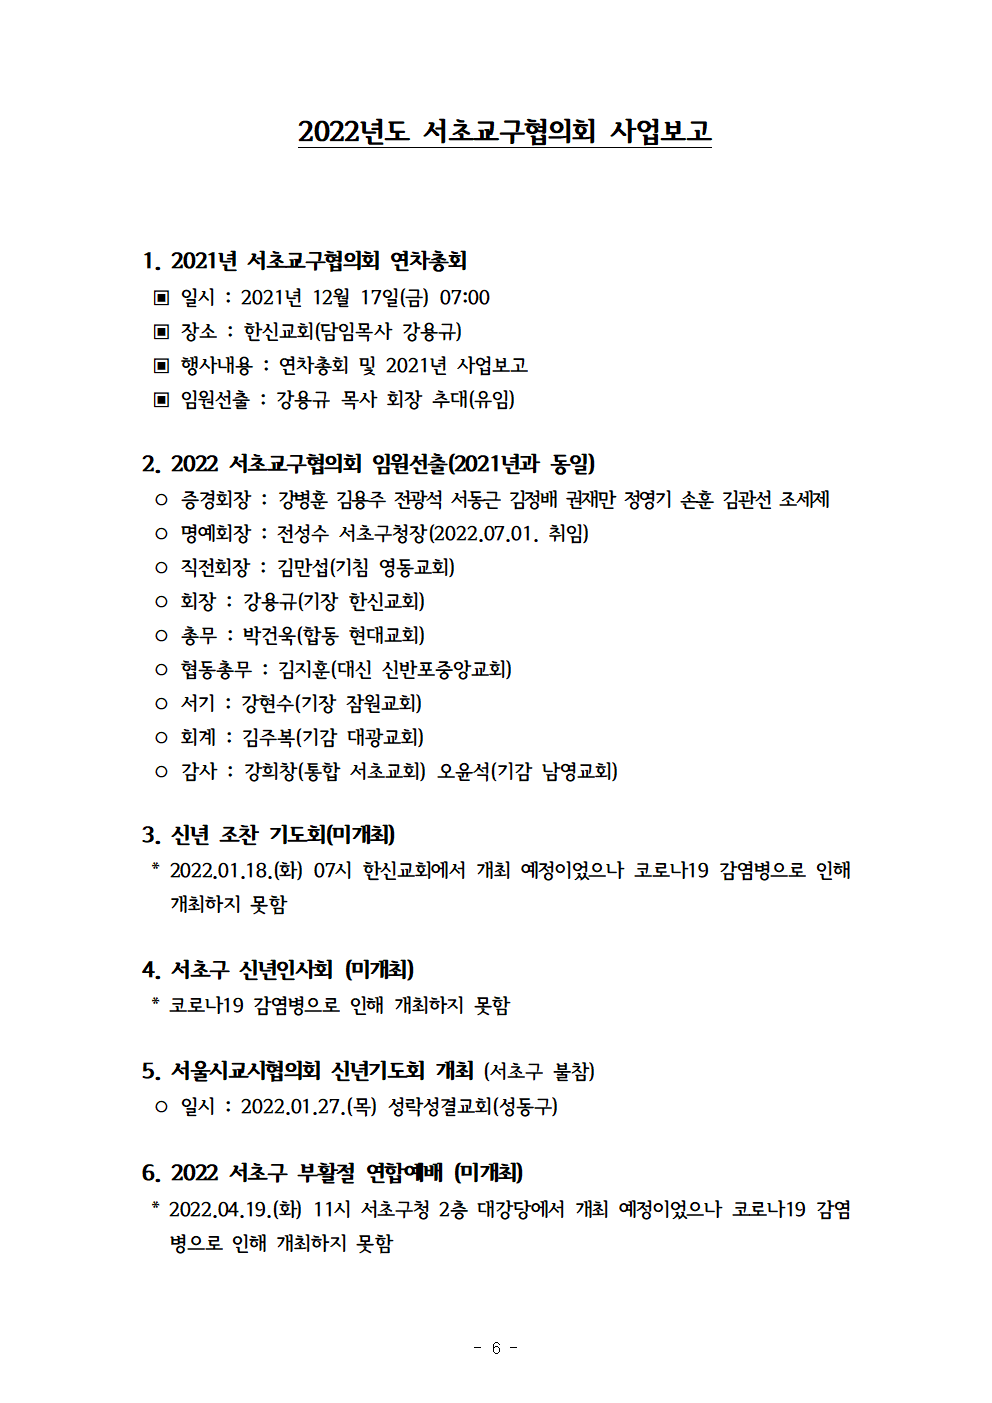 2022회기 서초교구협의회 정기총회자료(12.13.)_홈페이지007.png